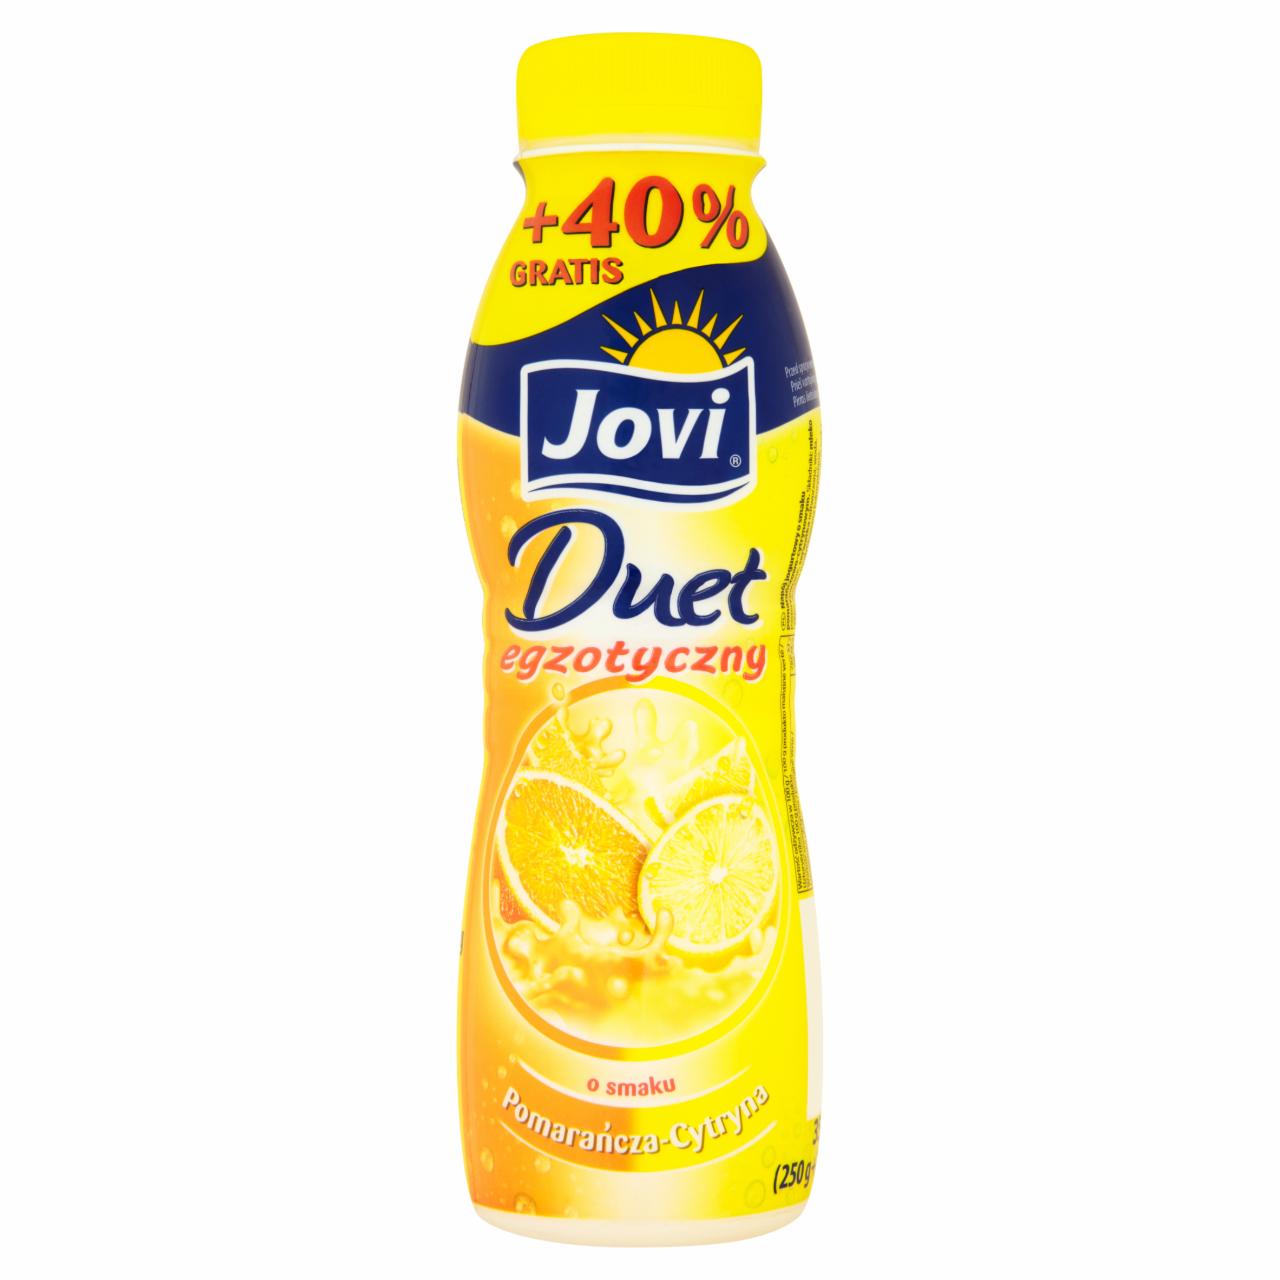 Zdjęcia - Jovi Duet egzotyczny Napój jogurtowy o smaku pomarańczowo-cytrynowym 350 g